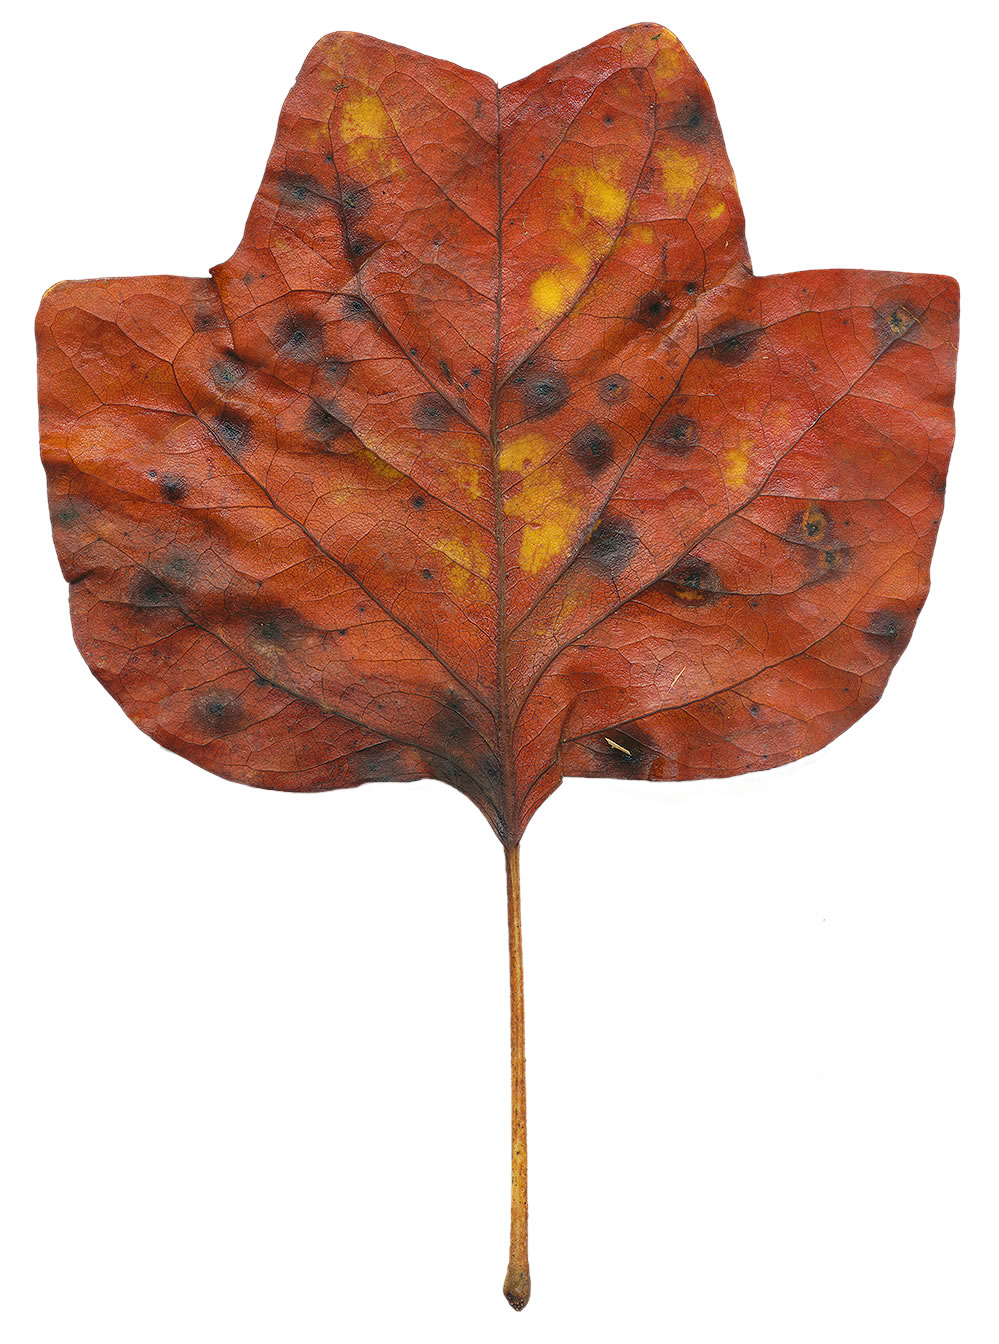 a poplar leaf out of season